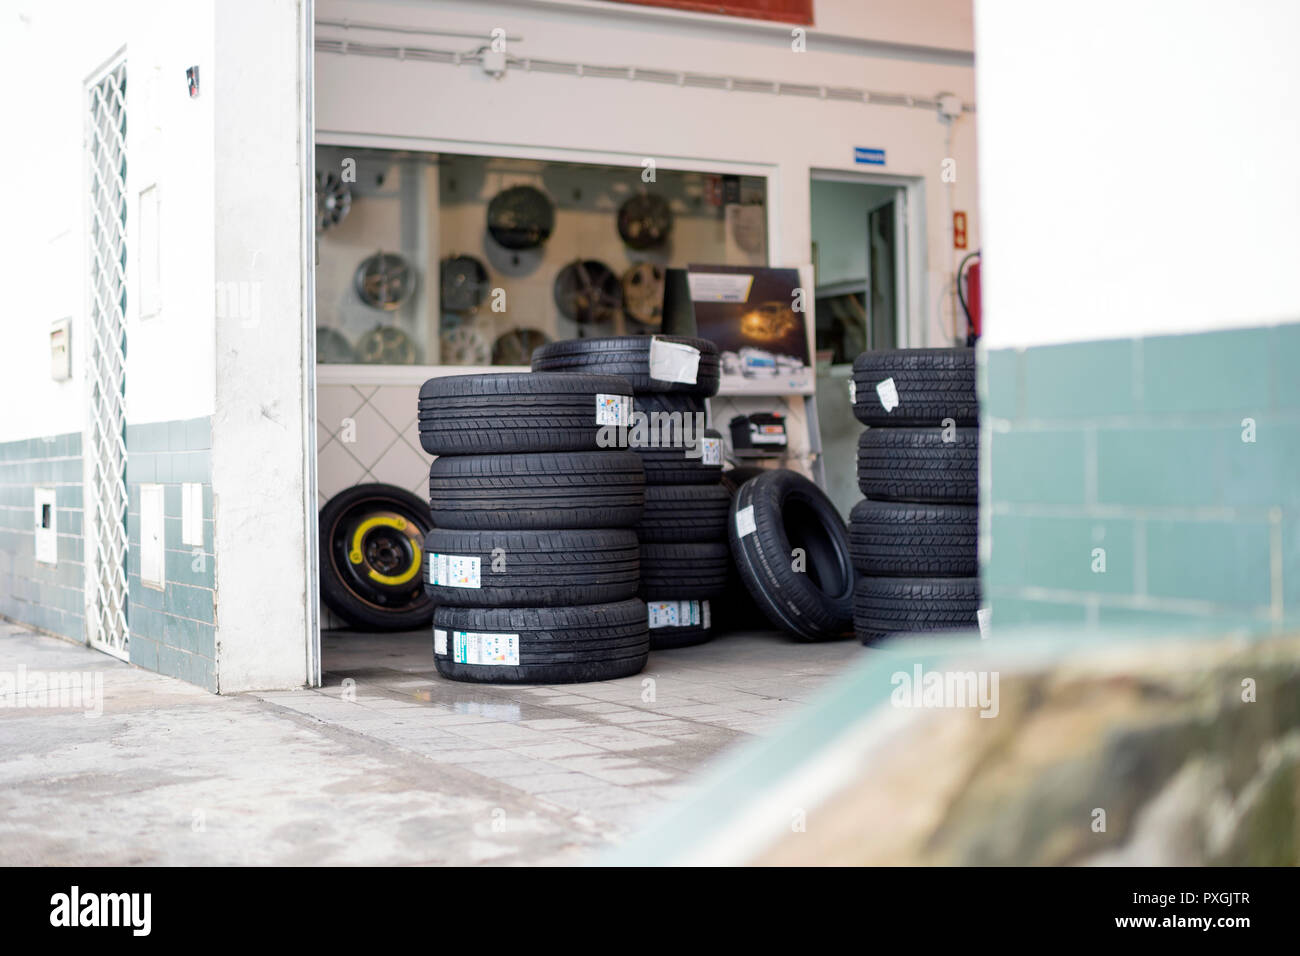 Boutique ordinaire où vous pouvez acheter et changer de pneus in car Banque D'Images